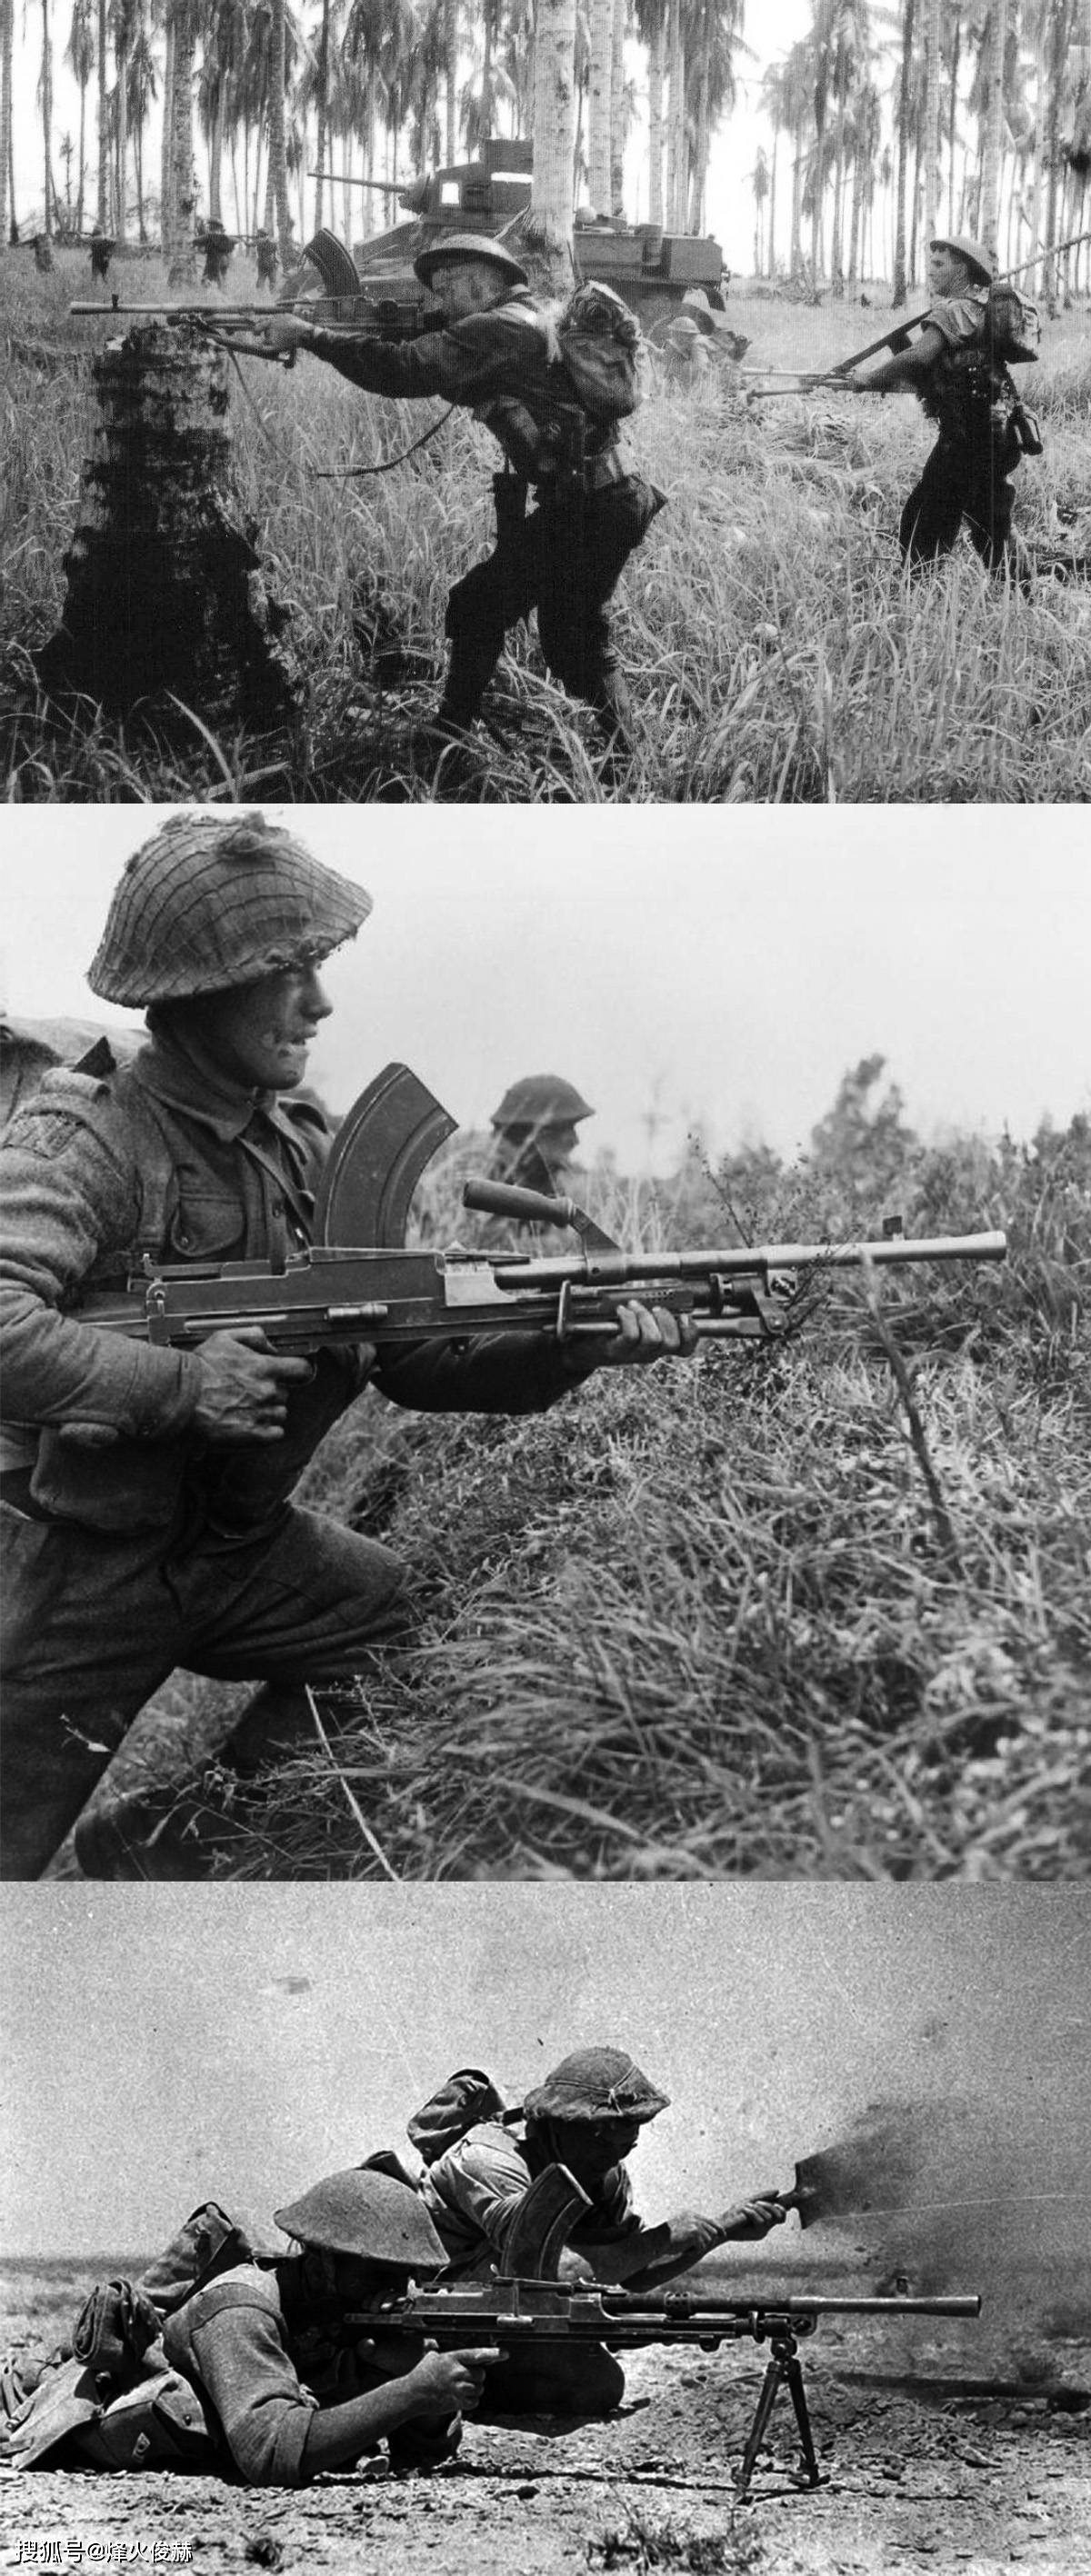 二战中的英军:步兵班火力还行,战斗力属实有点坑_步枪